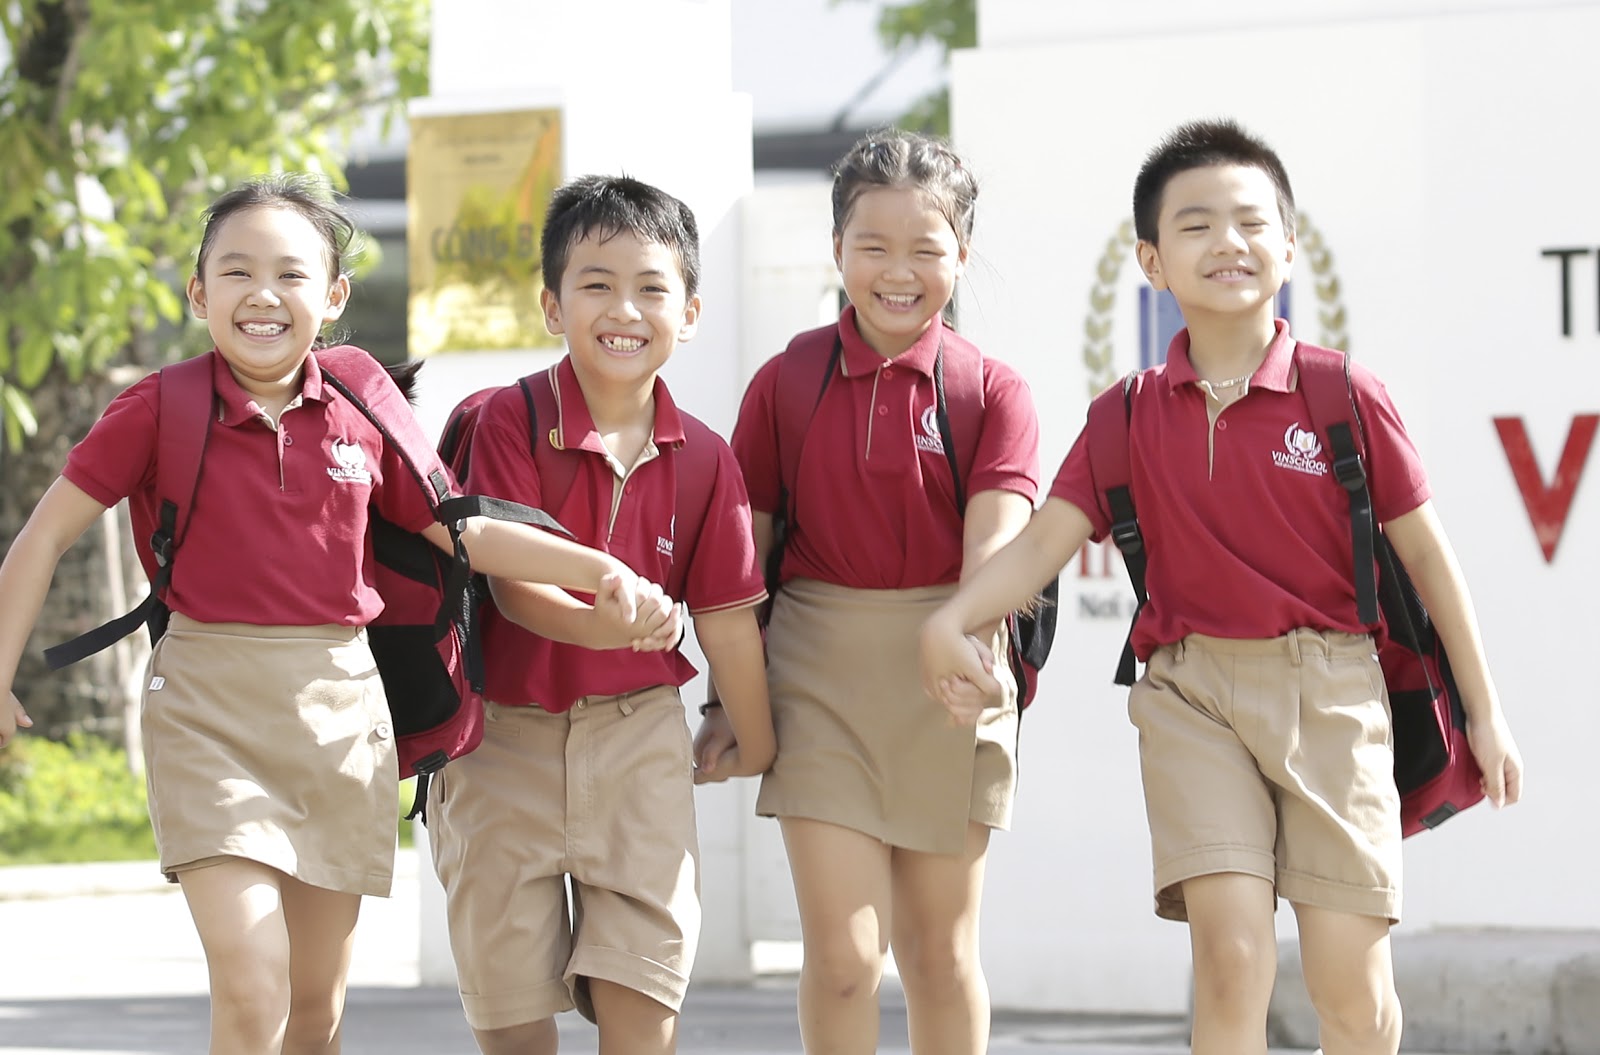 Học sinh Tiểu học vui đùa trong chiếc áo đồng phục của trường